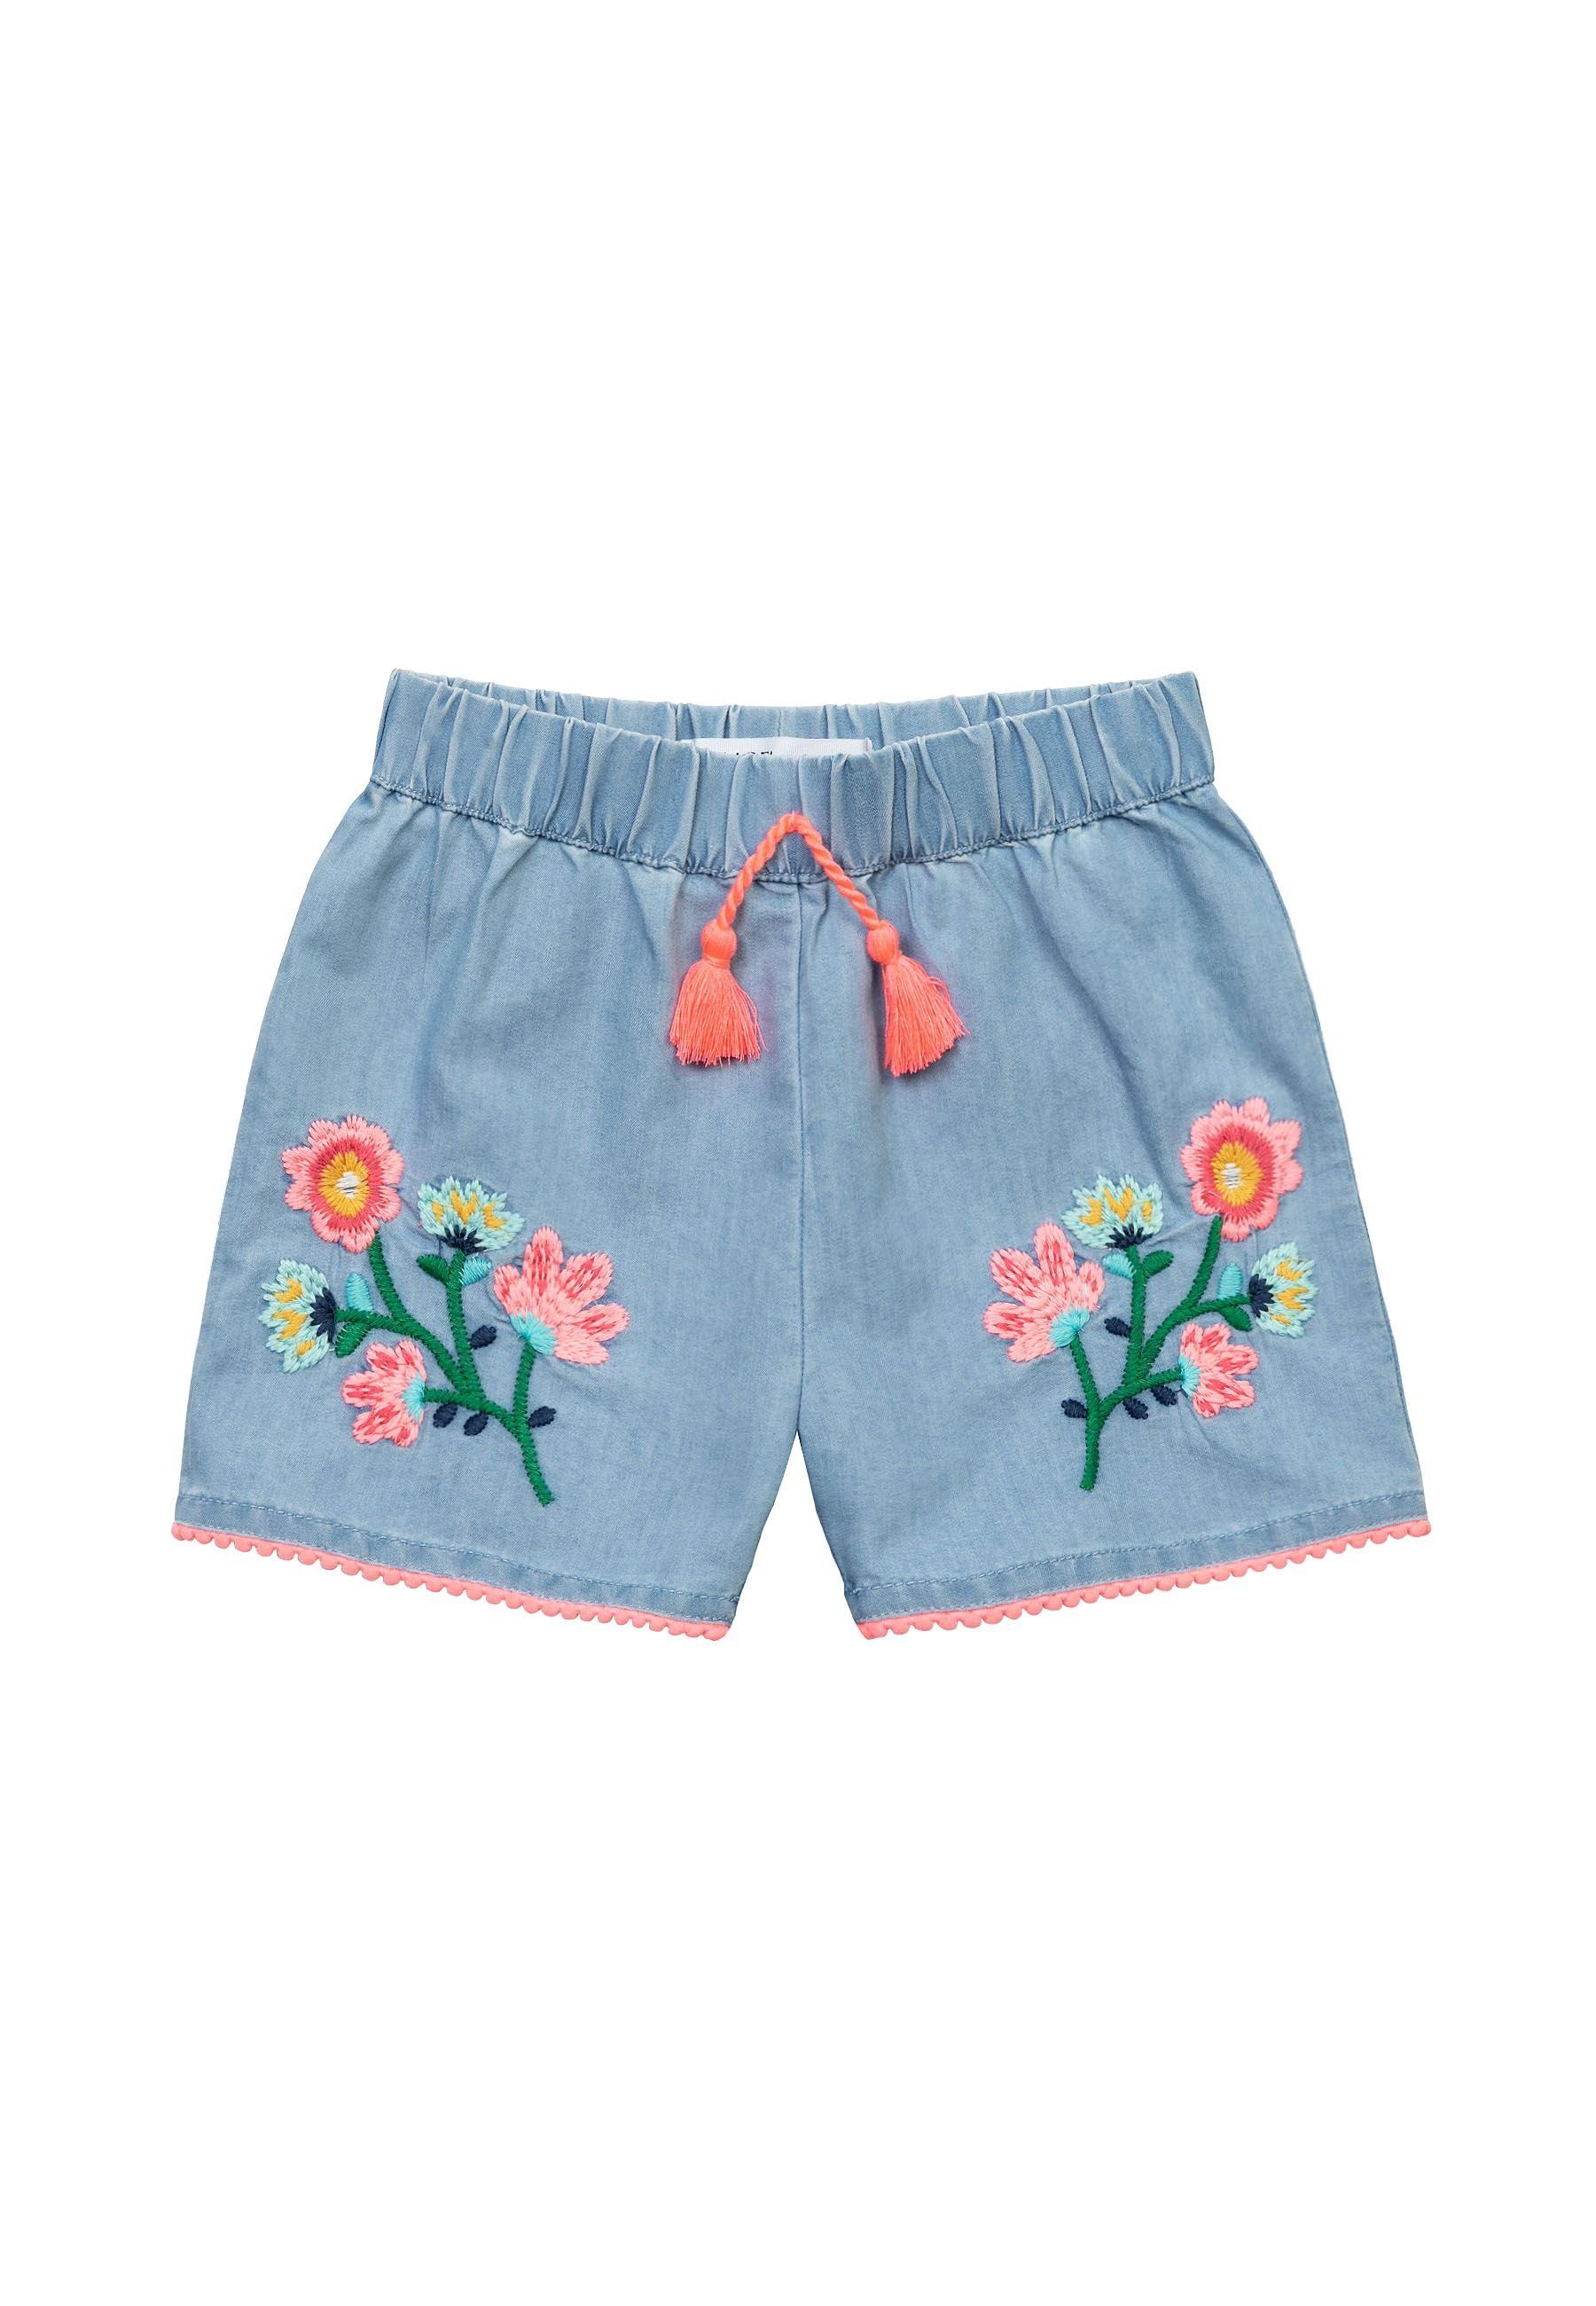 MINOTI Webshorts Shorts (1y-8y)